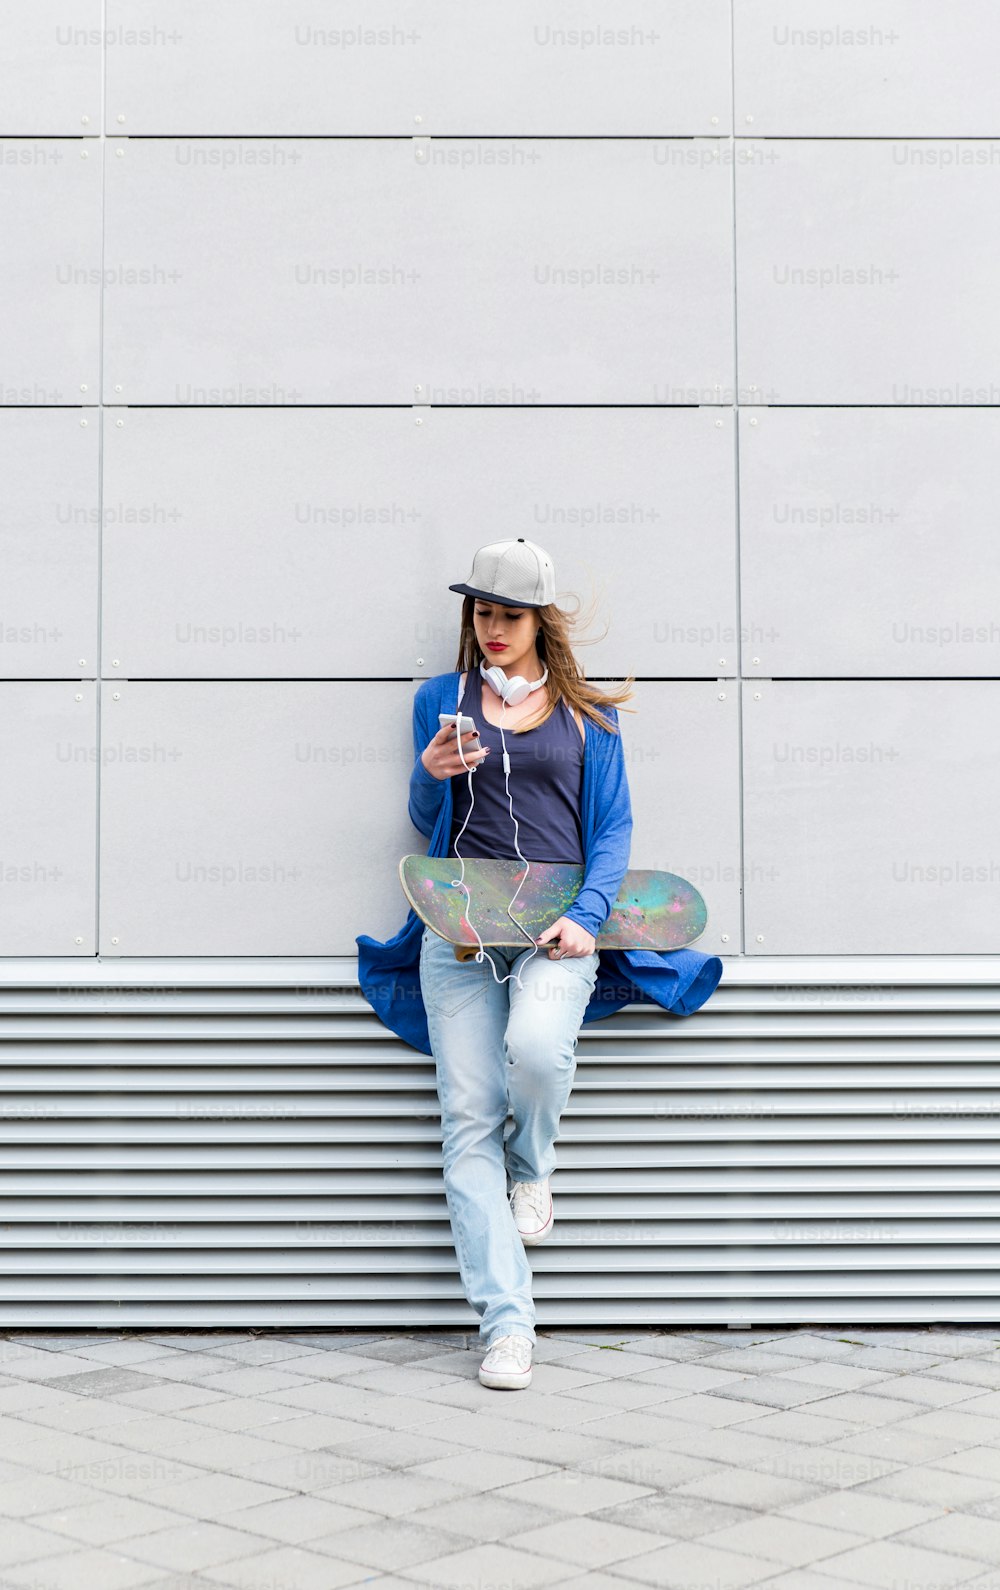 Niña con patineta apoyada en una pared gris moderna, sostiene un teléfono móvil en la mano.